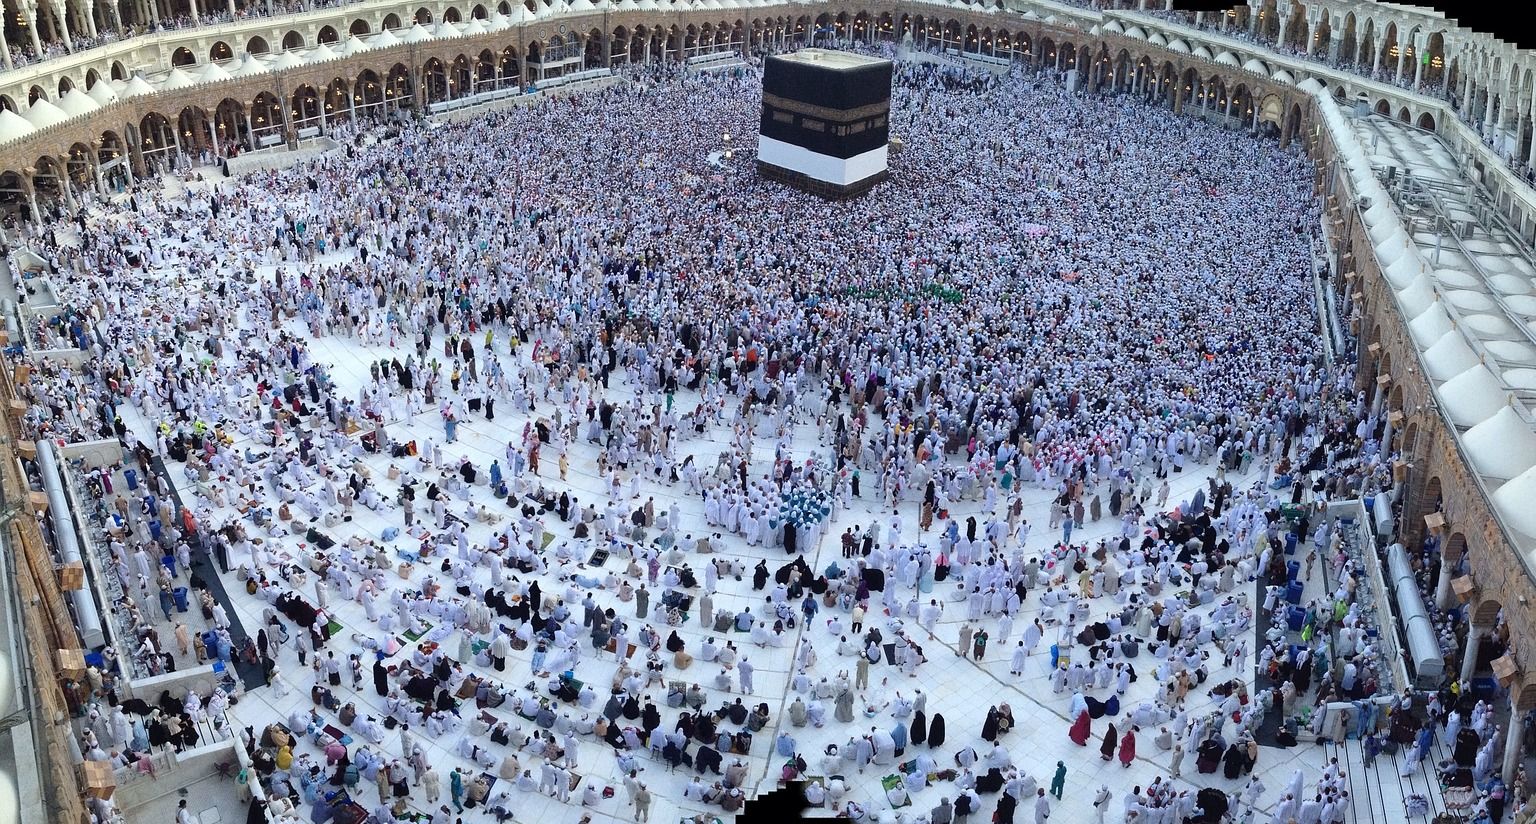 Memasuki bulan Ramadan Masjidil Haram di Makkah sudah dipersiapkan untuk menampung jutaan umat dari berbagai belahan dunia.